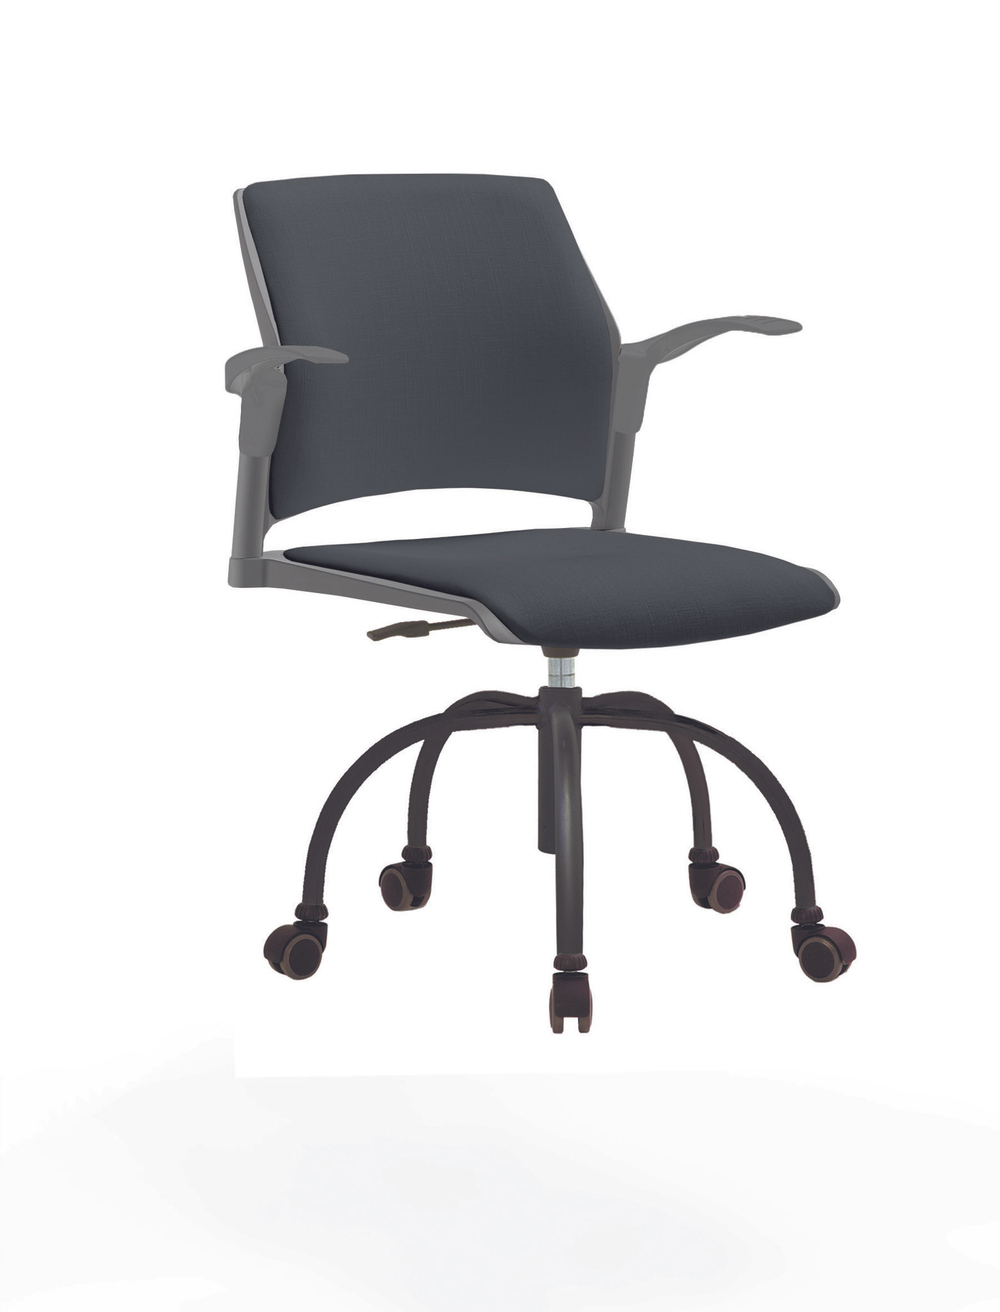 Кресло Rewind каркас черный, пластик серый, база паук краска черная, с открытыми подлокотниками, сиденье и спинка антрацит